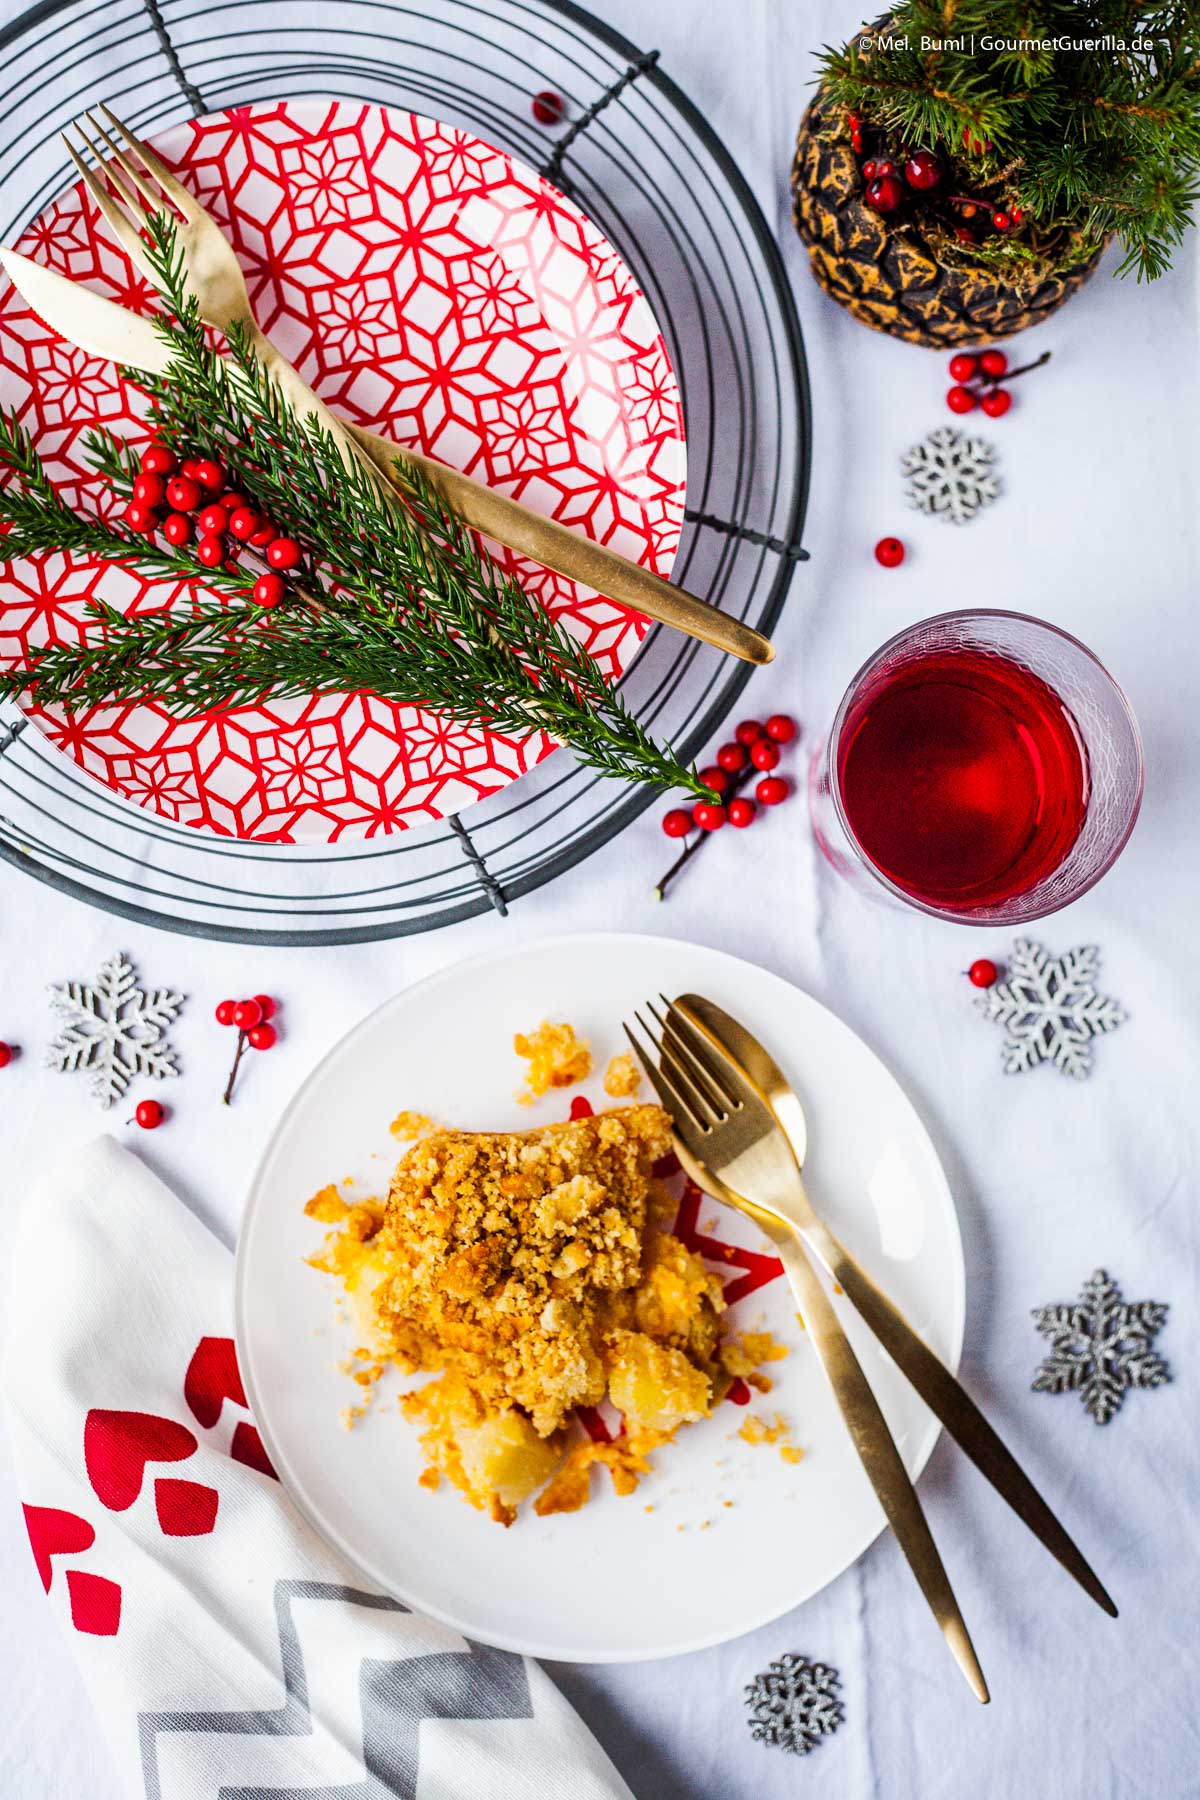 North Carolina Weihnachts-Auflauf mit Ananas und Cheddar | GourmetGuerilla.de